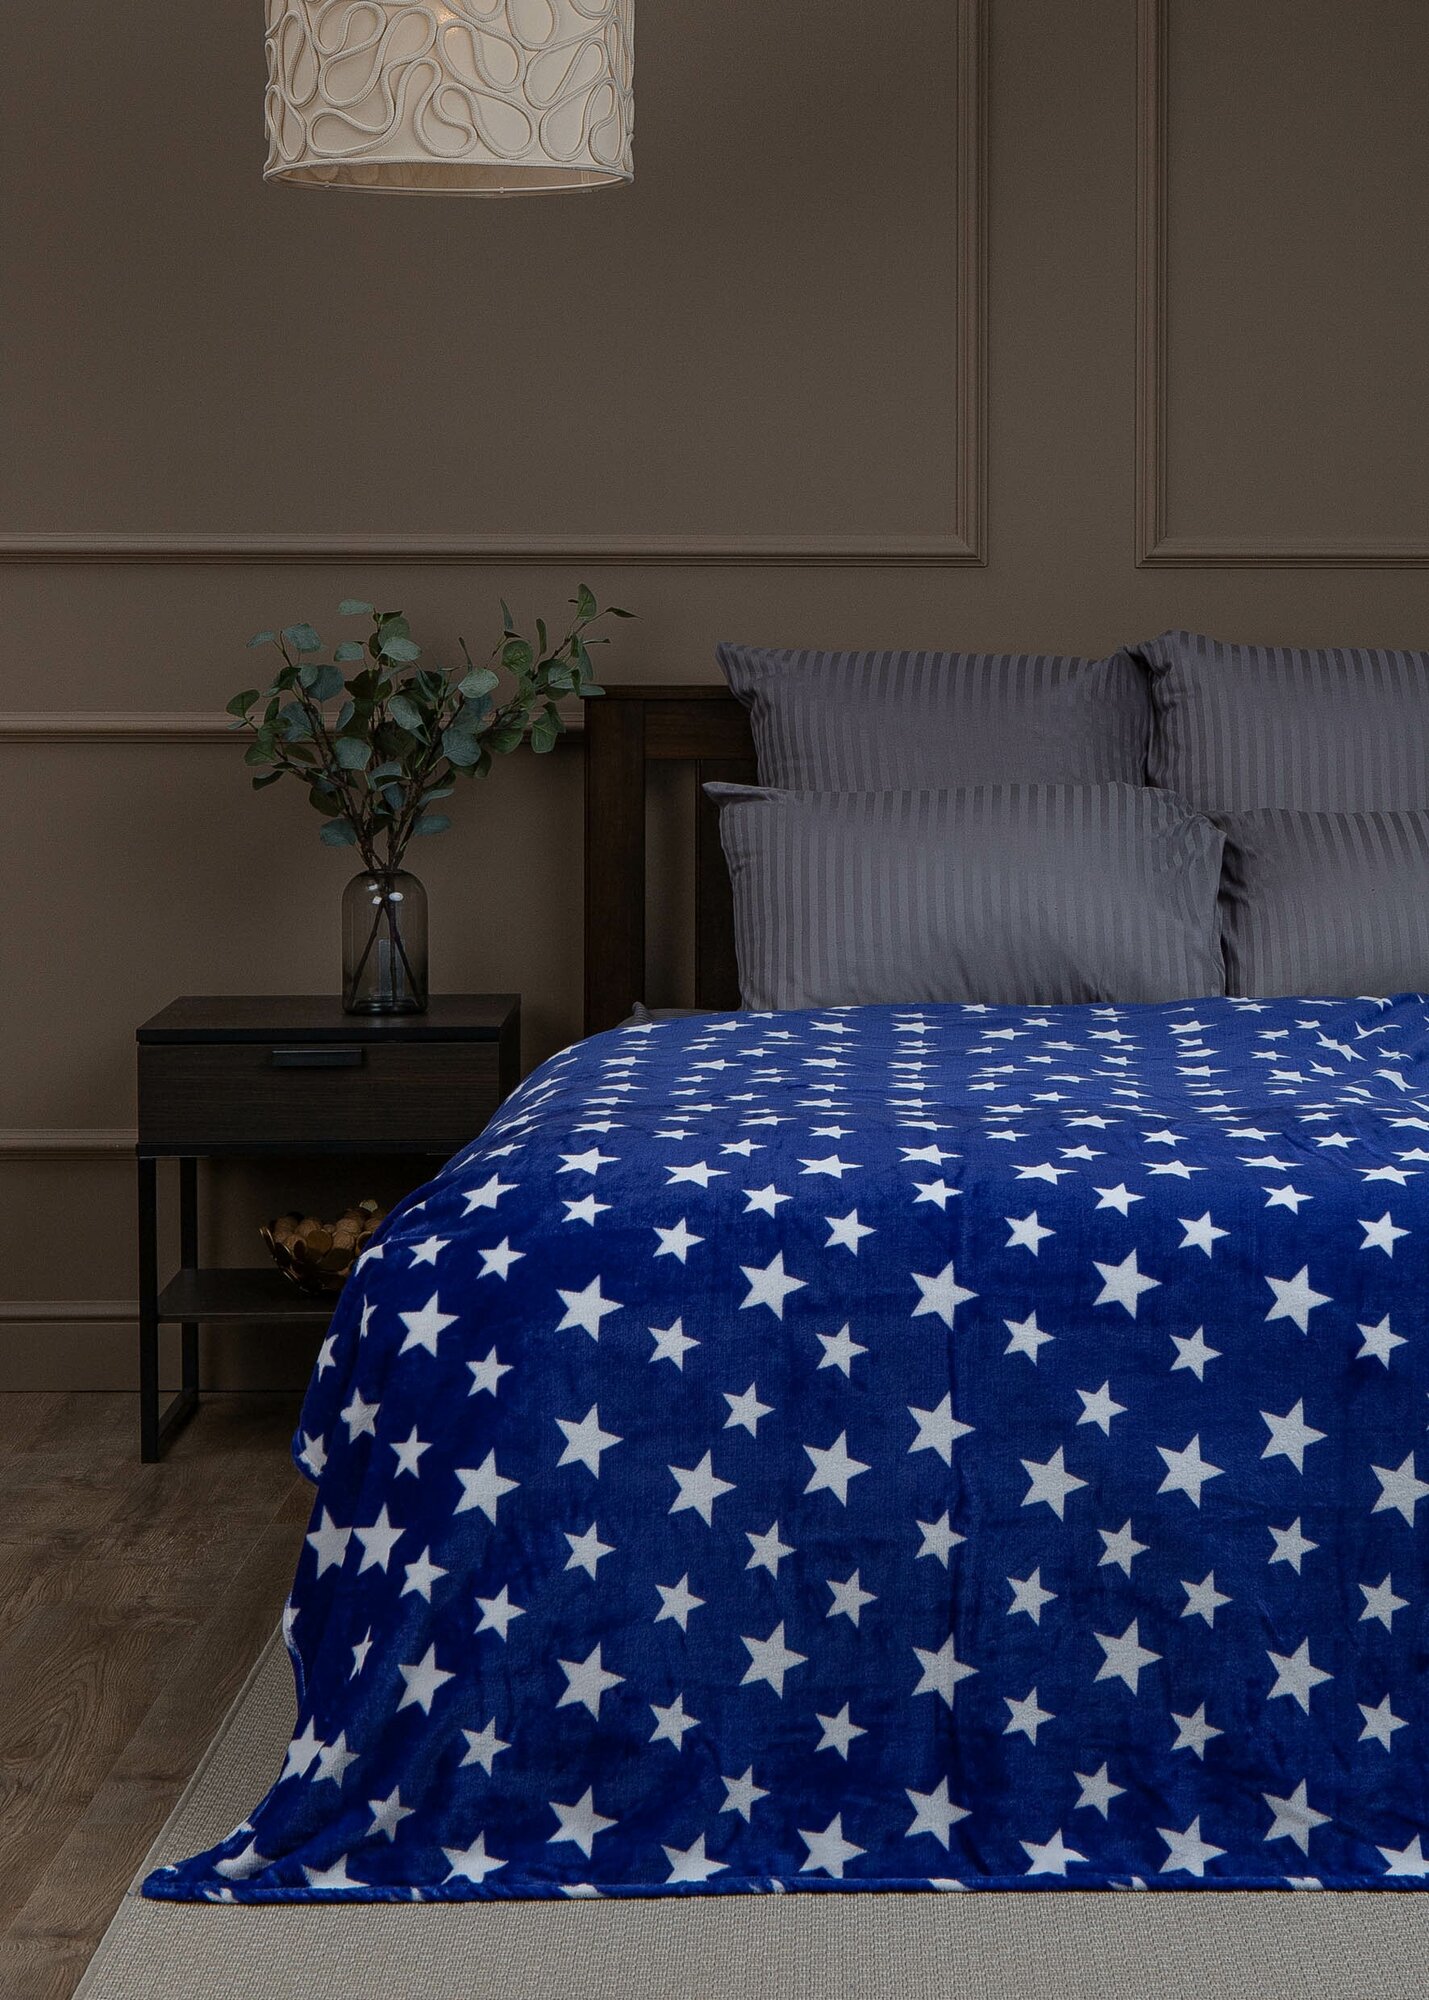 Плед TexRepublic Absolute Звёзды Фланель 140х200 см покрывало на диван кровать с рисунком Синий / белый